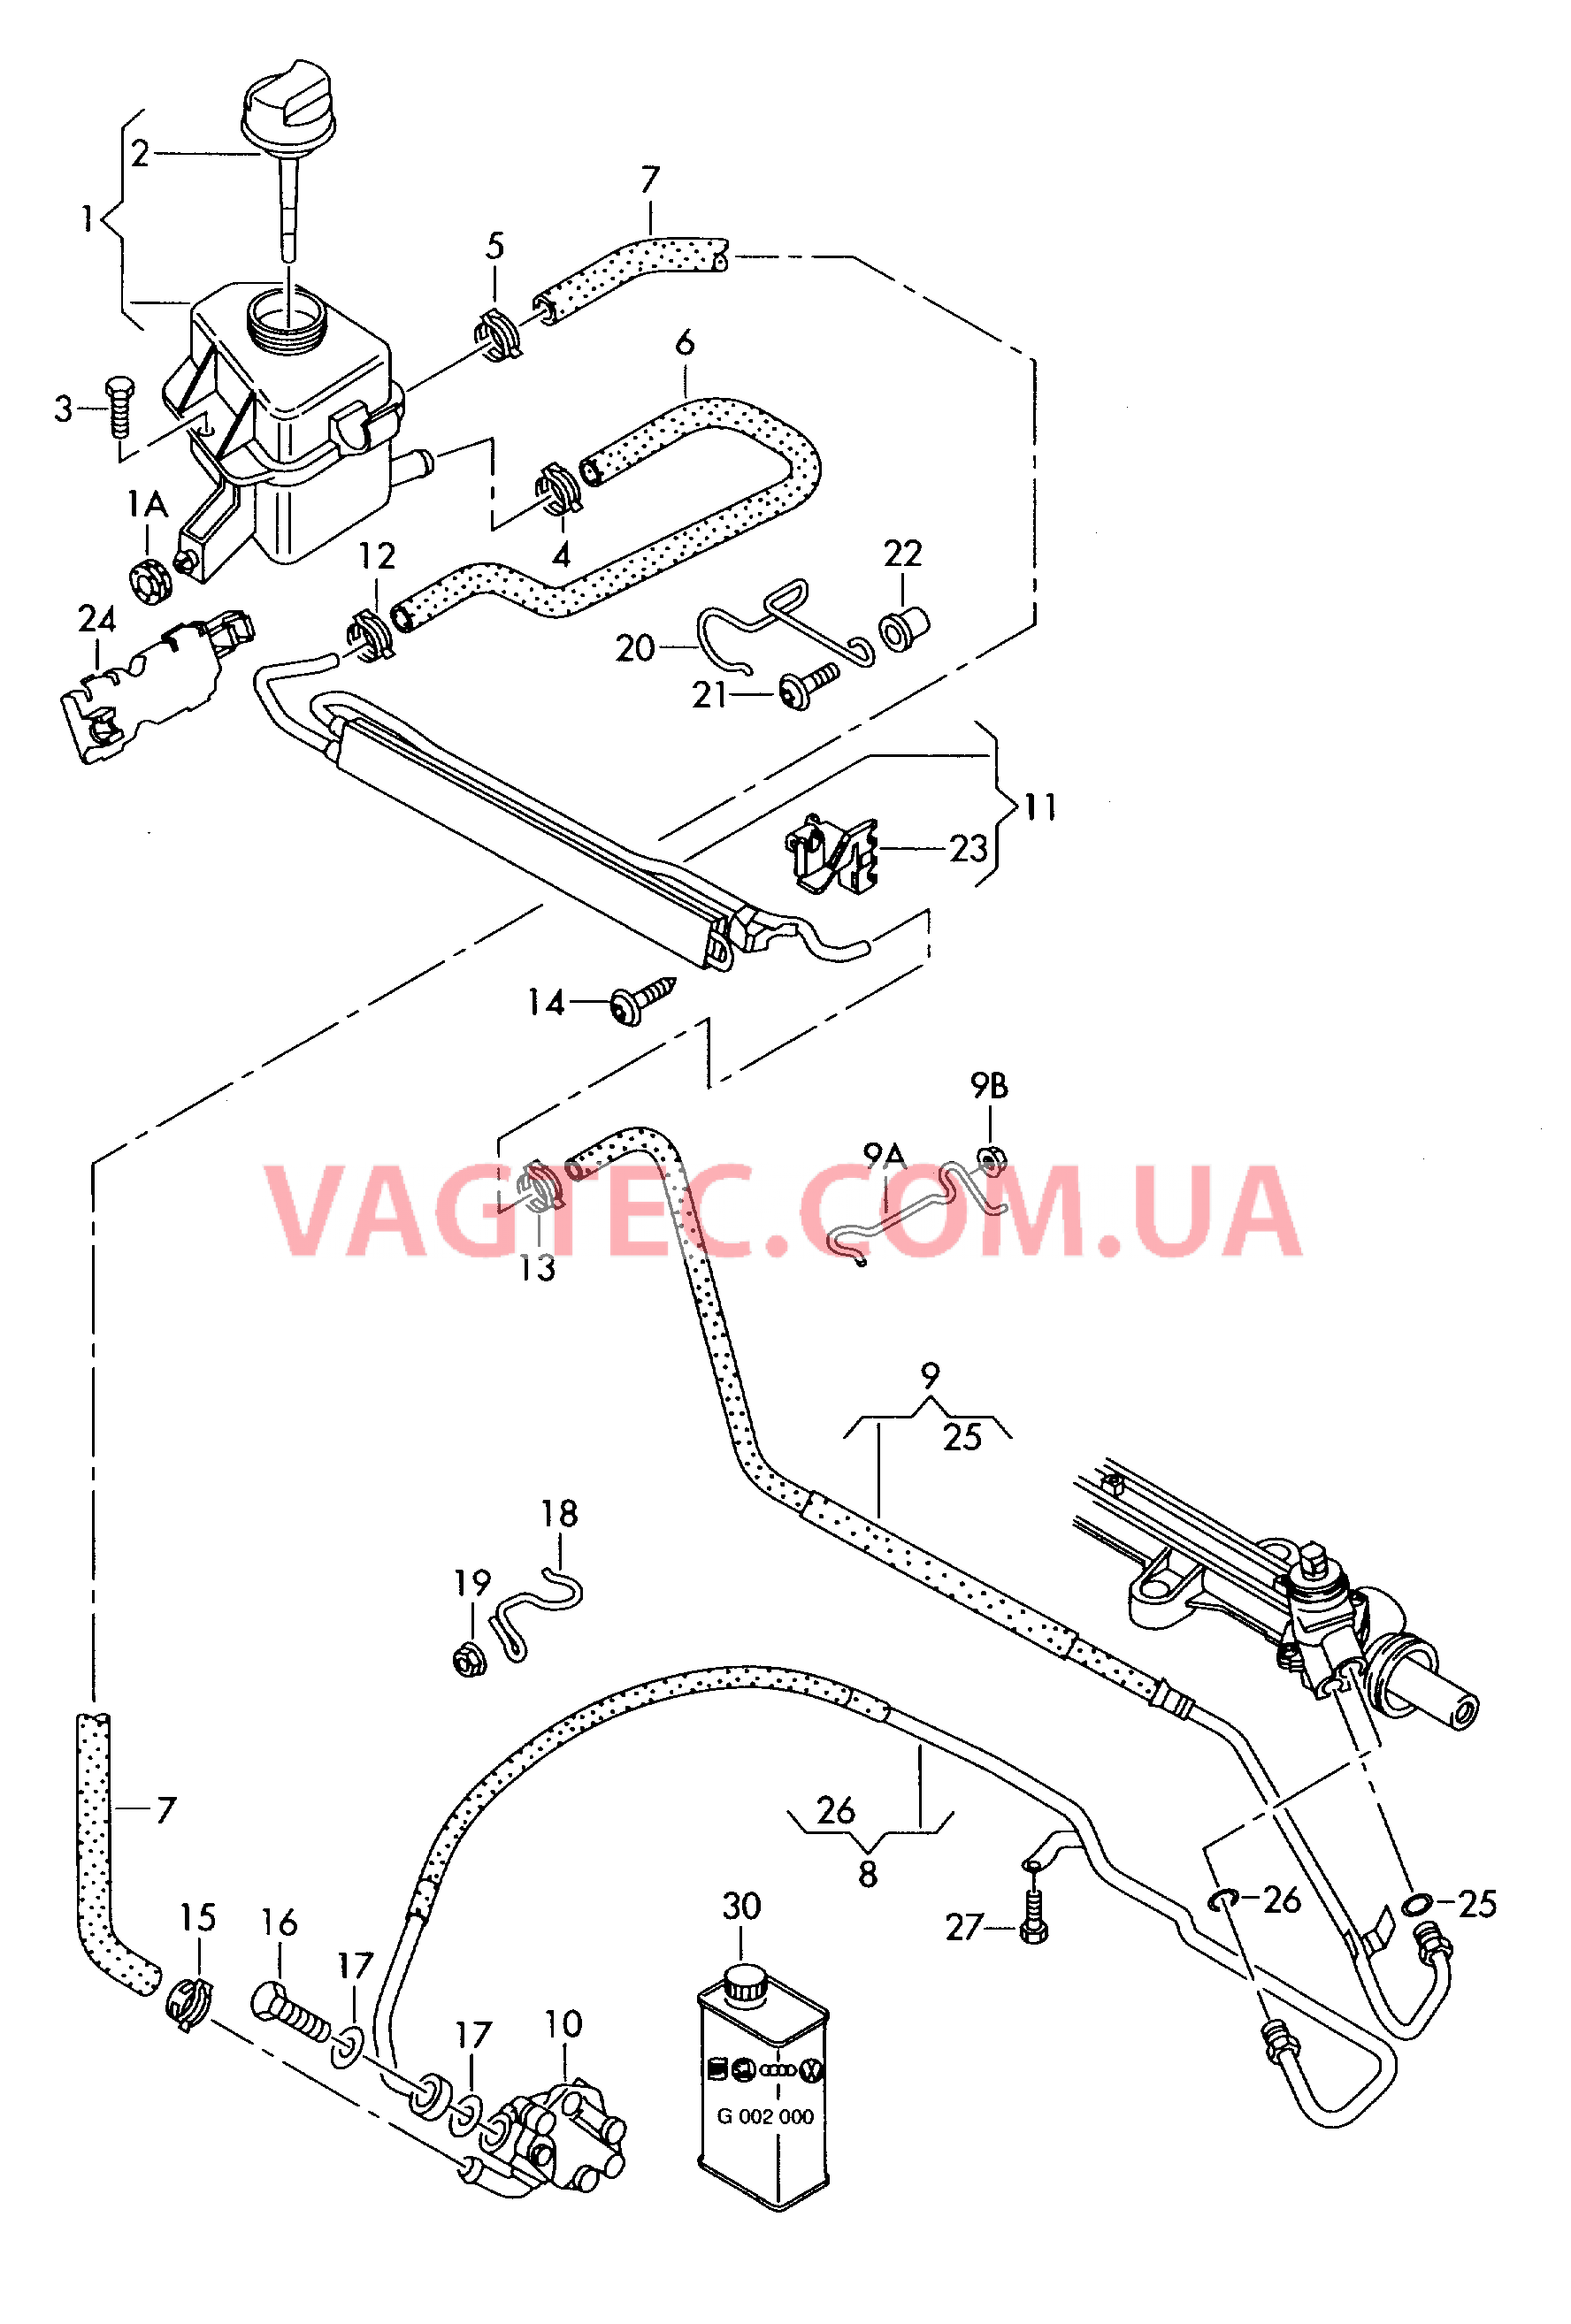 Масляный бачок с соединительными деталями, шлангами  для ГУРа  для VOLKSWAGEN Transporter 2004-1